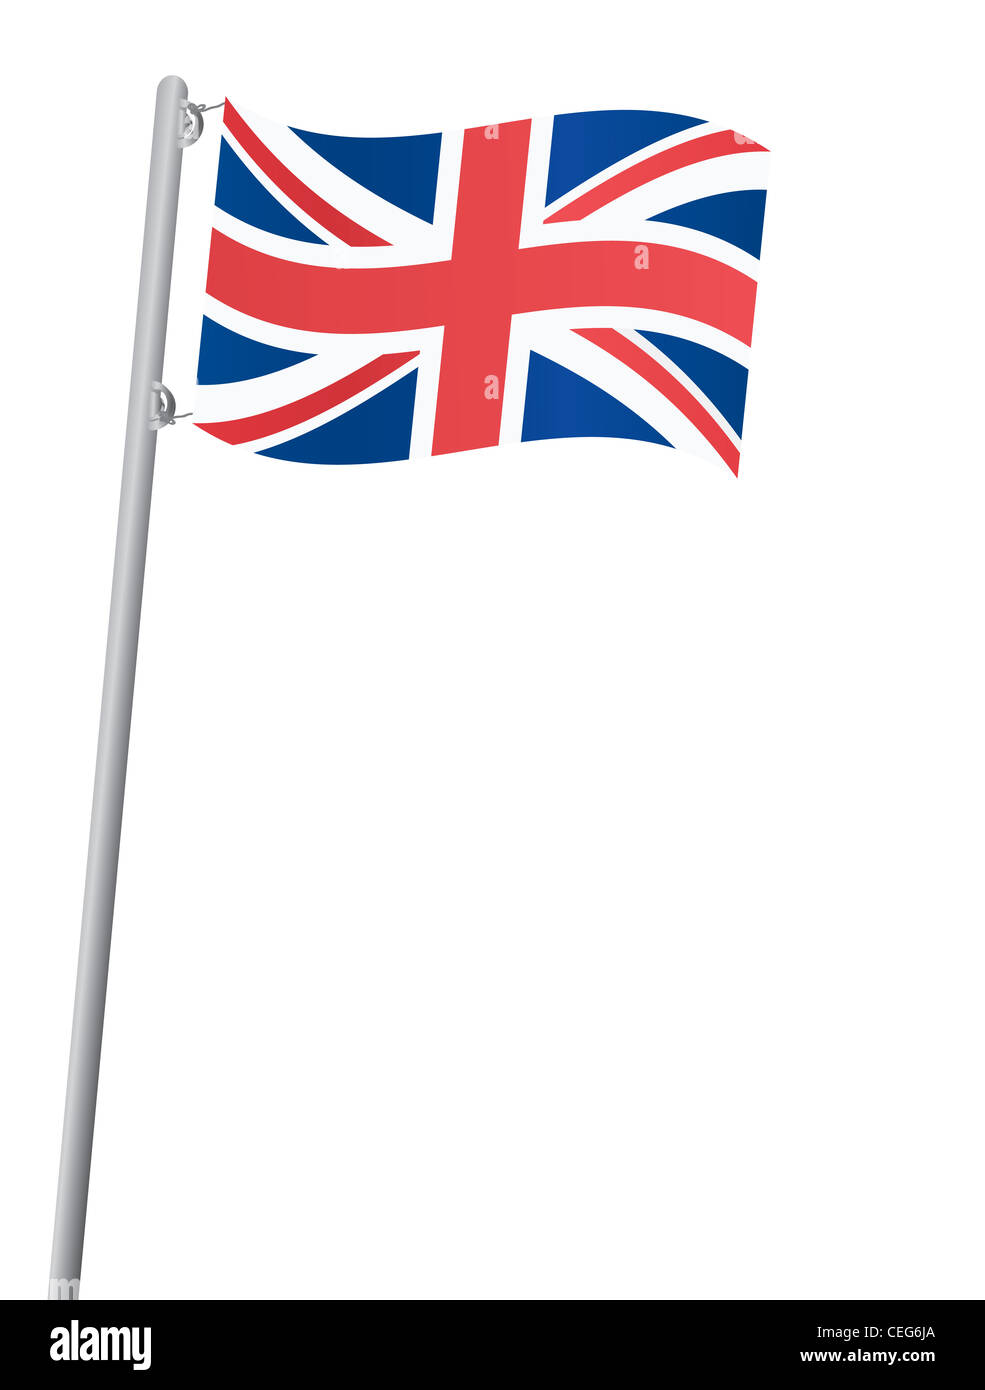 Royaume-uni drapeau sur une illustration de Flagstaff Banque D'Images